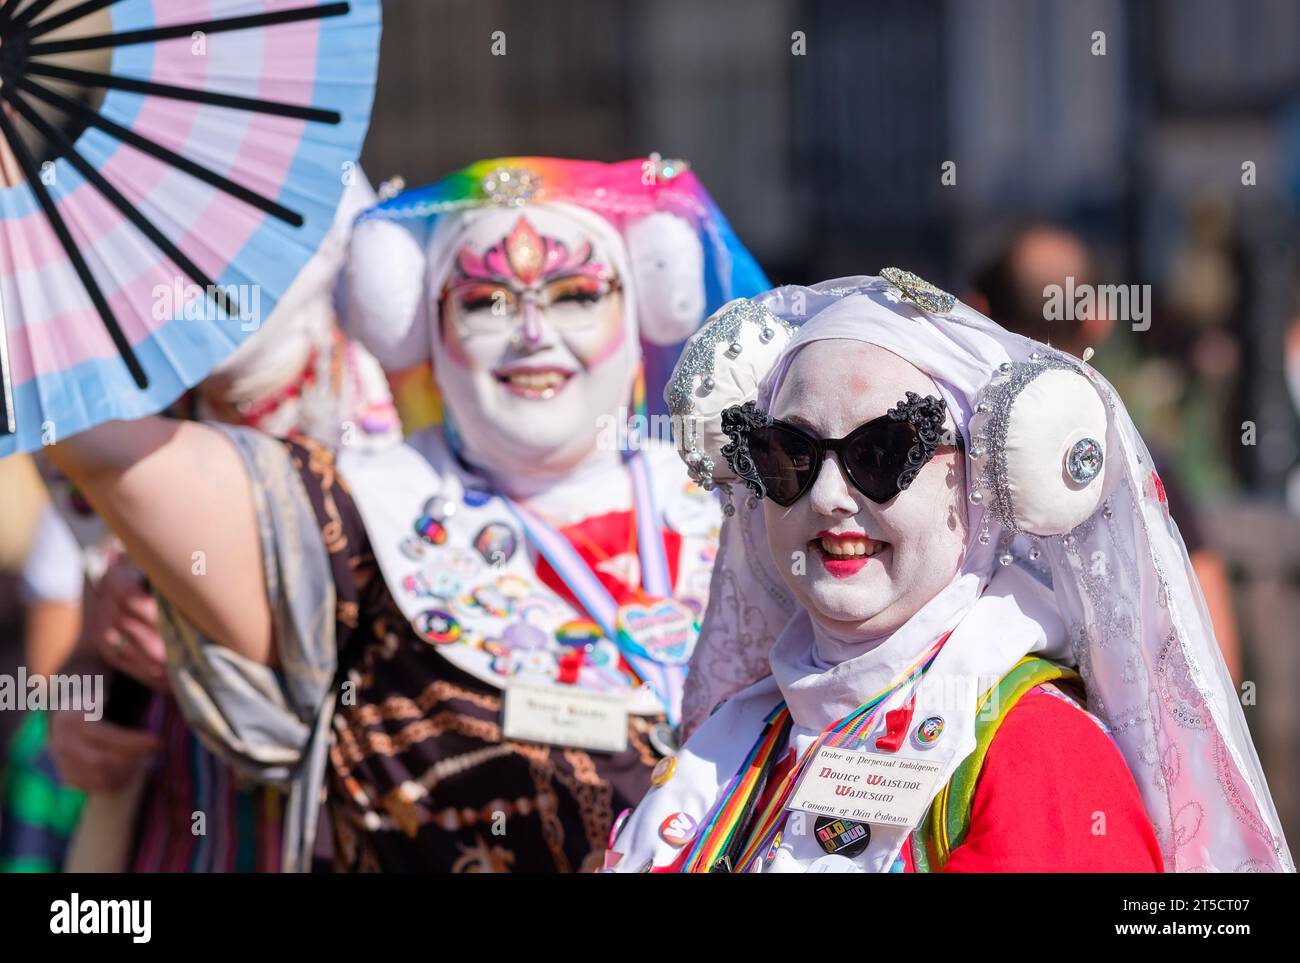 Artistes de rue habillés posant au Festival Fringe d'Édimbourg Banque D'Images